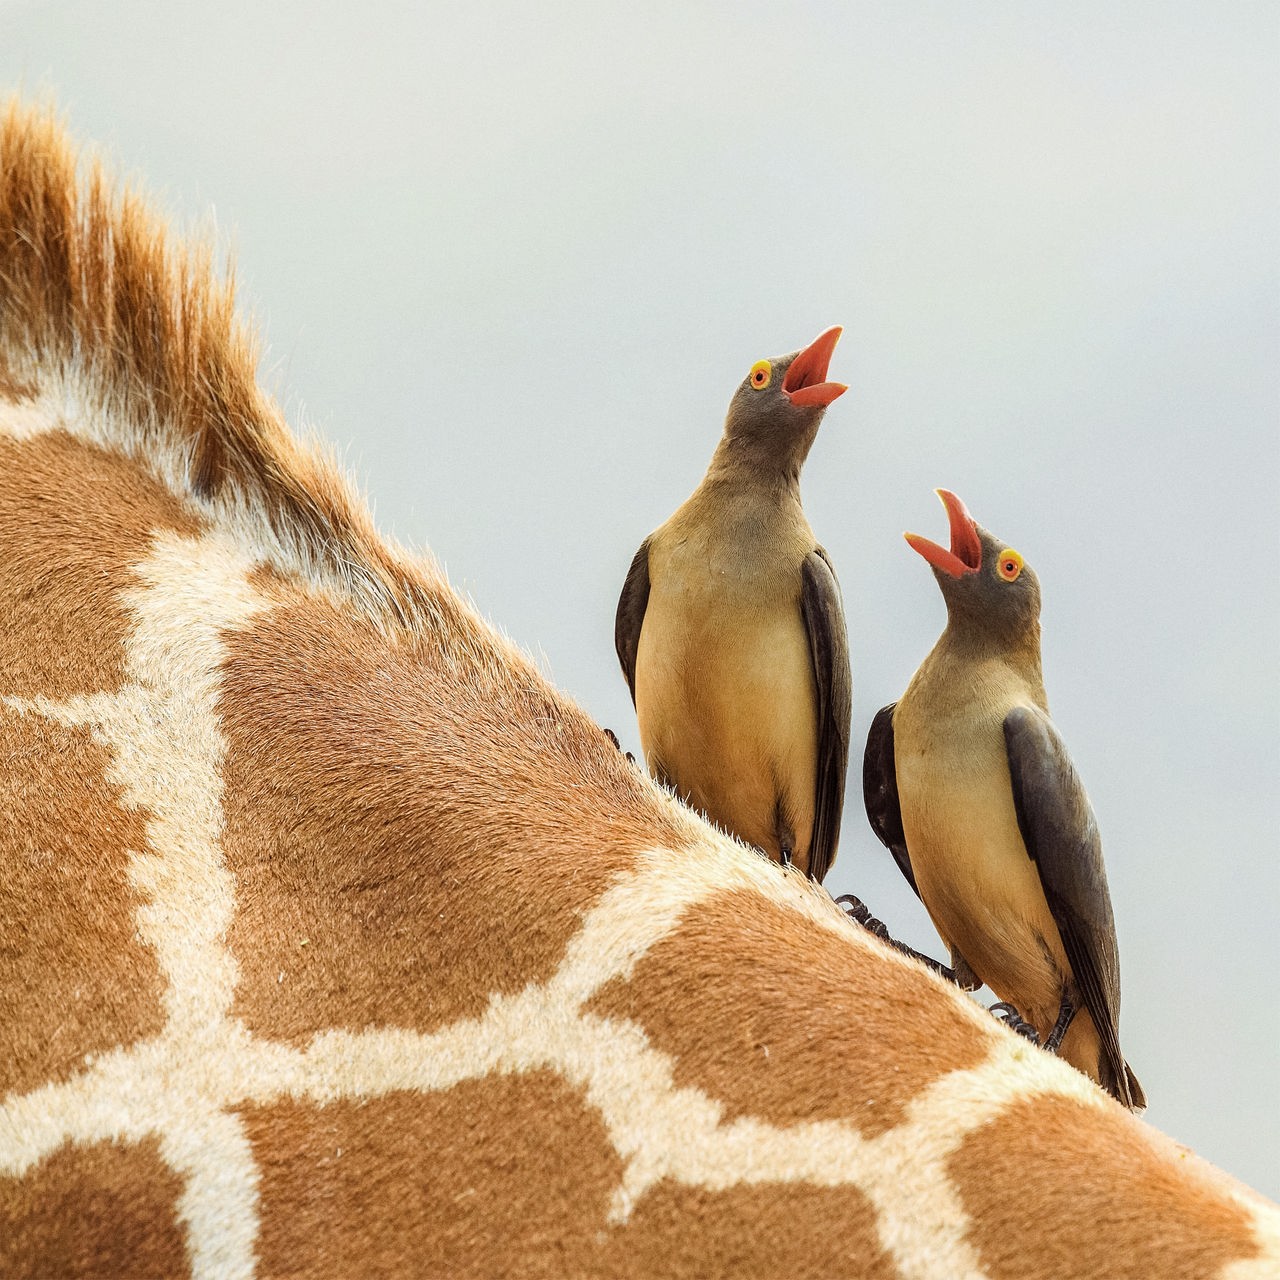 Zwei graue-braune Vögel mit roten Schnäbeln und orangefarbenen Ringen um ihre Augen sitzen auf dem Rücken einer Giraffe.